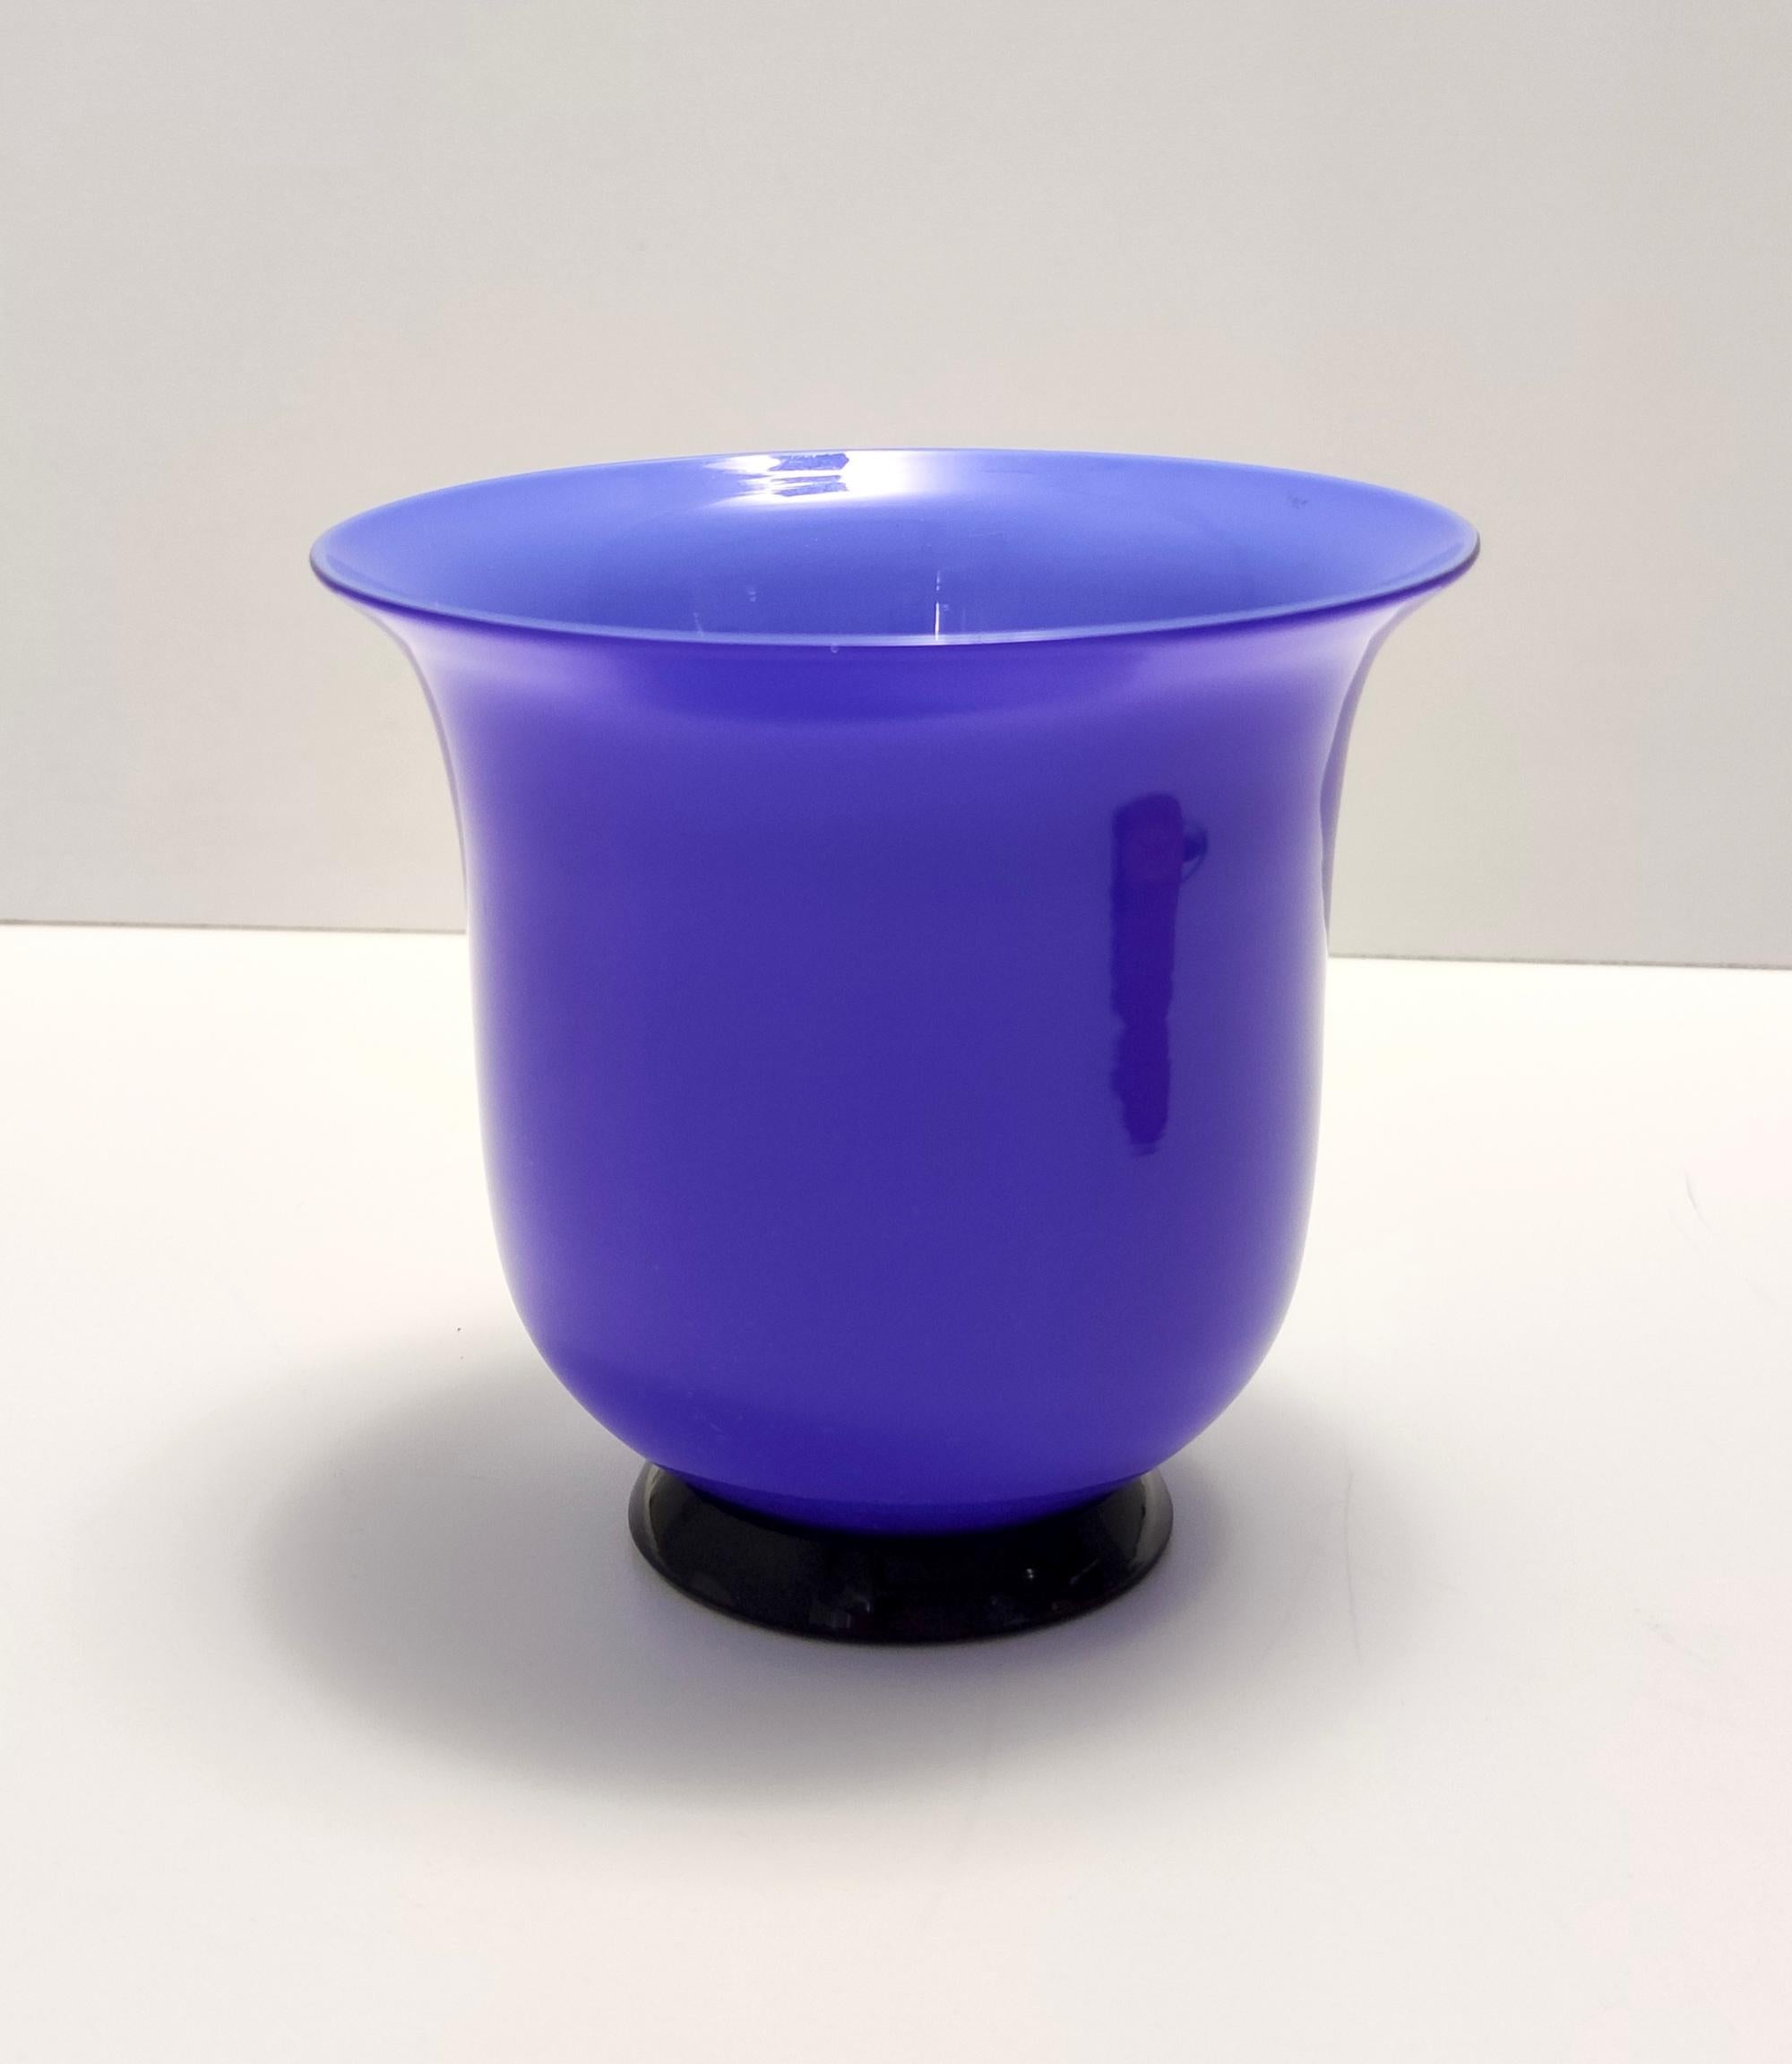 Fabriqué en Italie, Murano, années 1990.
Ce vase est fabriqué en verre opalin bleu clair à l'intérieur et en verre opalin bleu royal à l'extérieur. 
Il est doté d'une base en verre plus foncé et a été soufflé à la main à Murano.
Cette pièce est